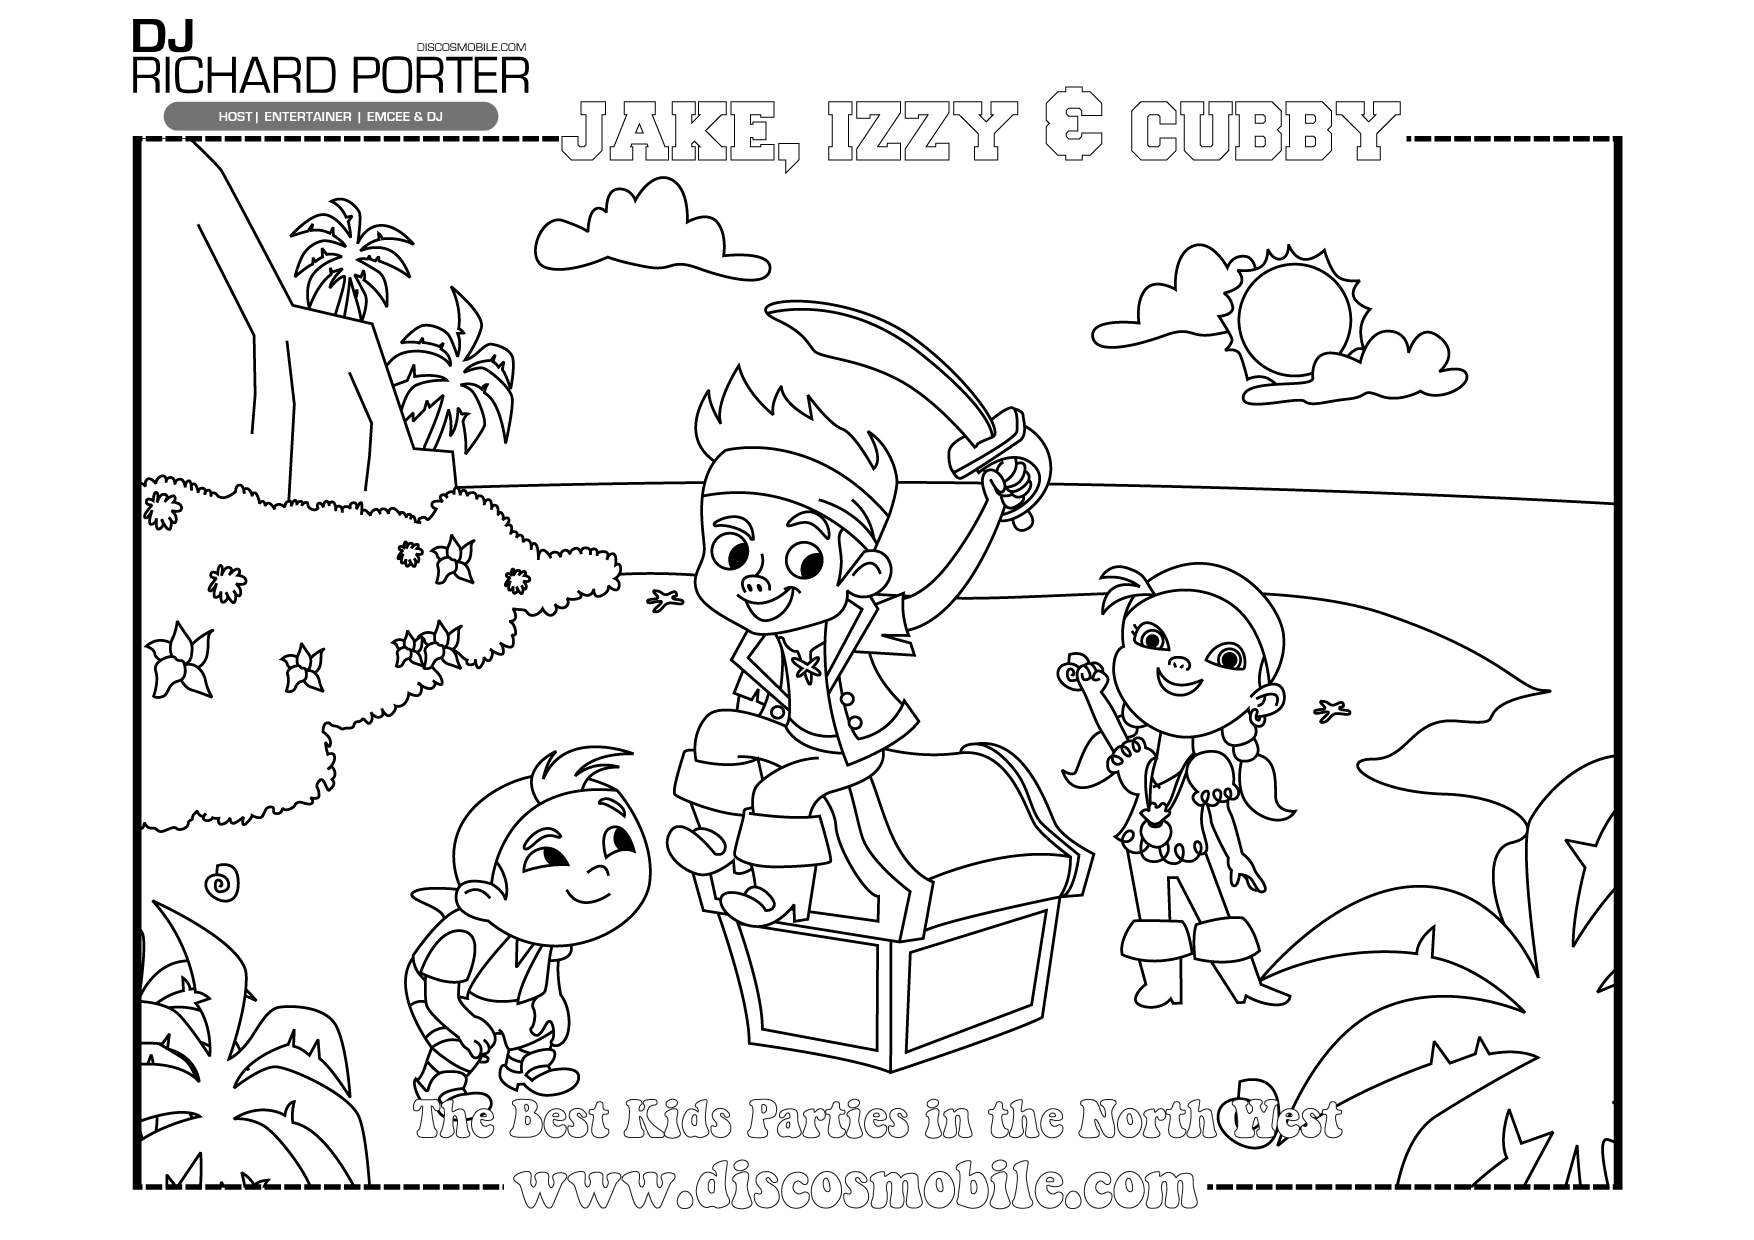 Malvorlage: Jake und die Neverland-Piraten (Karikaturen) #42513 - Kostenlose Malvorlagen zum Ausdrucken